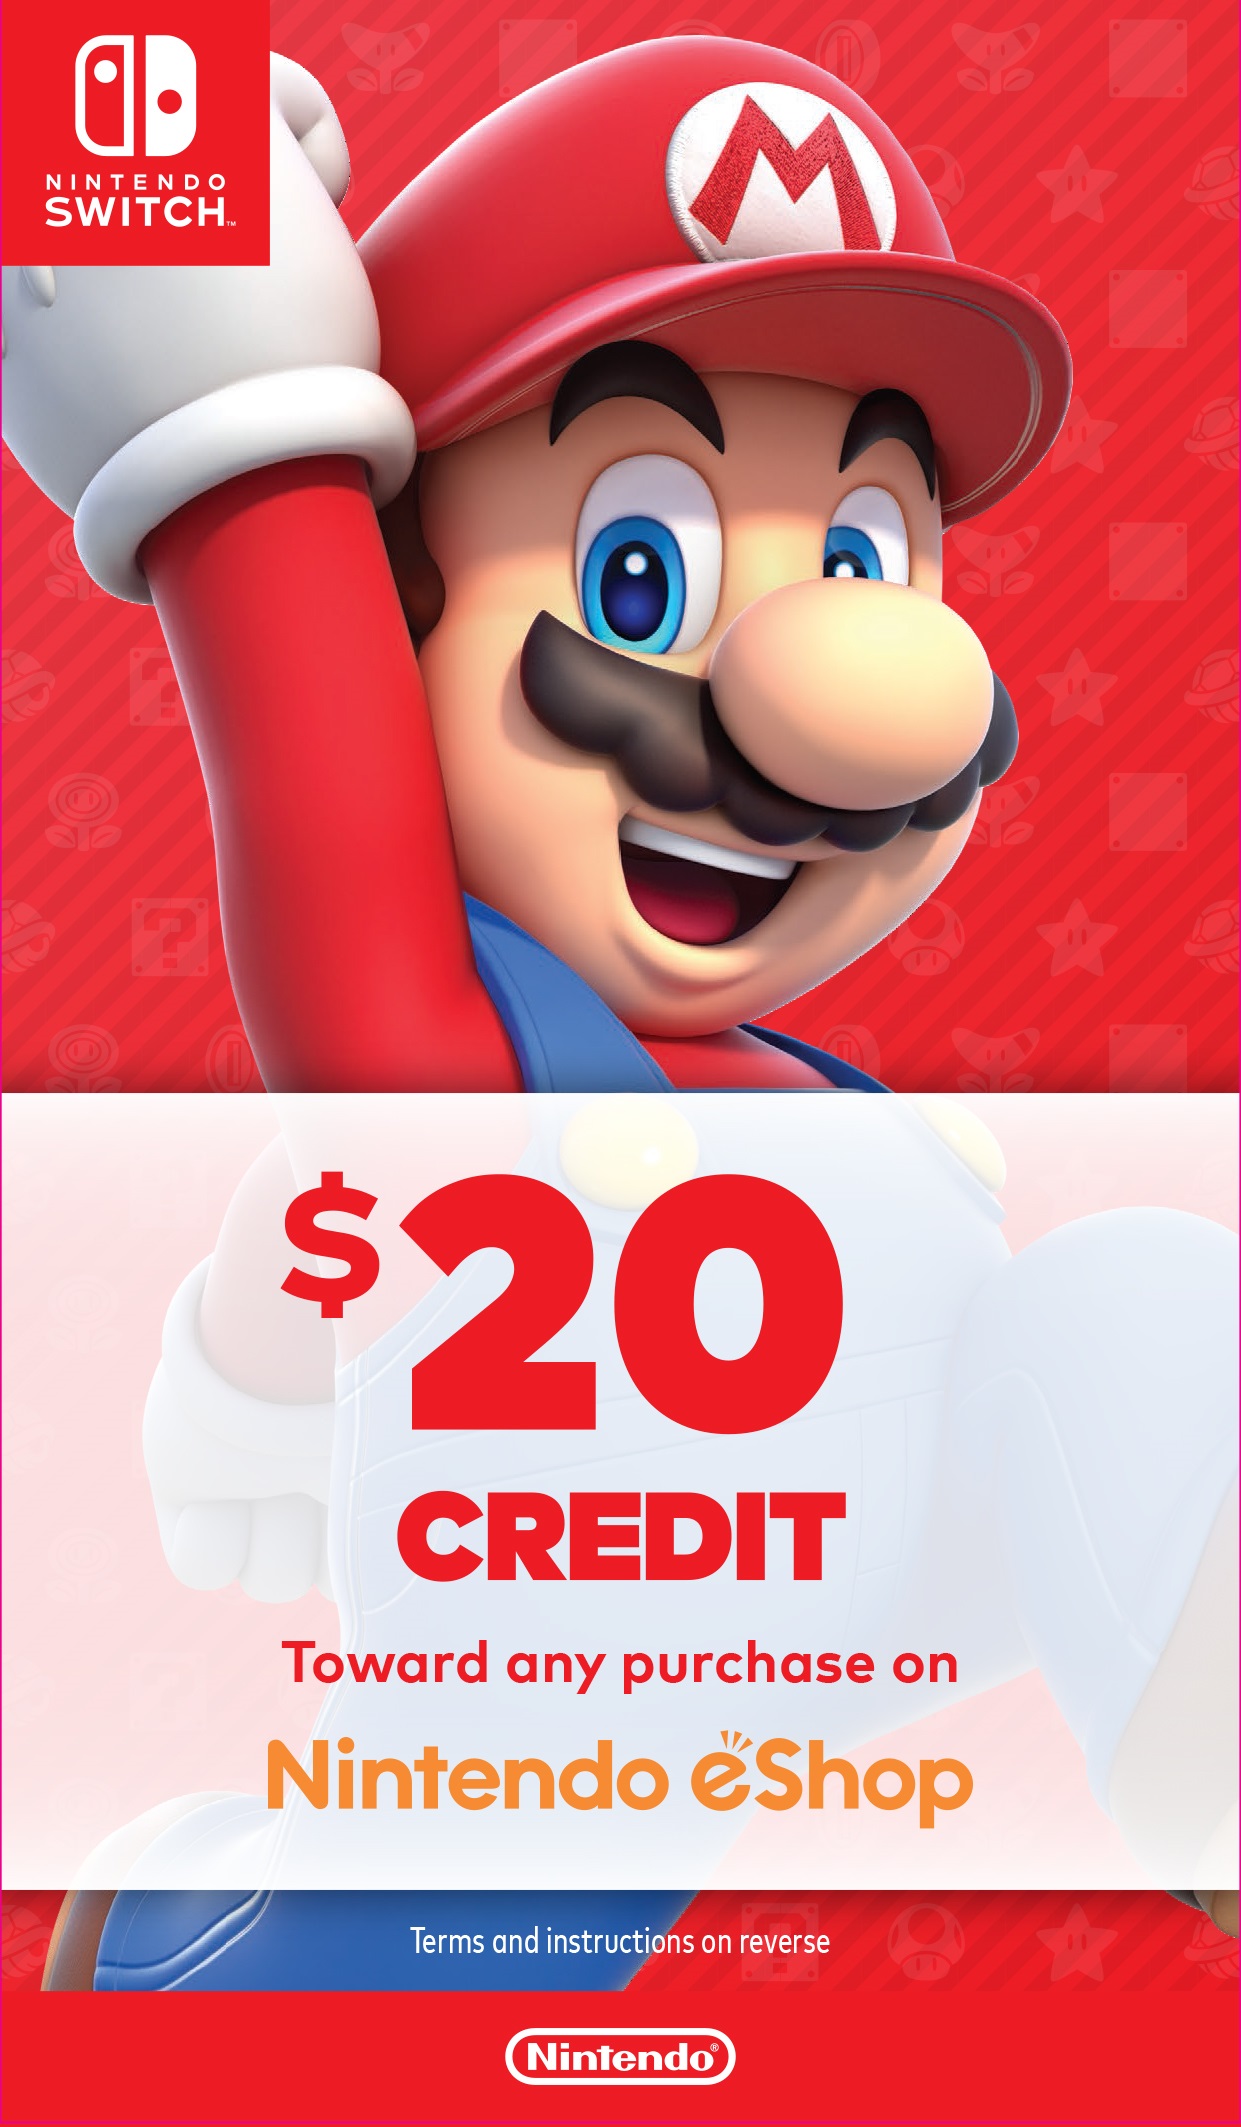 Nintendo Switch Bundle with Mario Red Joy-Con, $20 Nintendo eShop ...